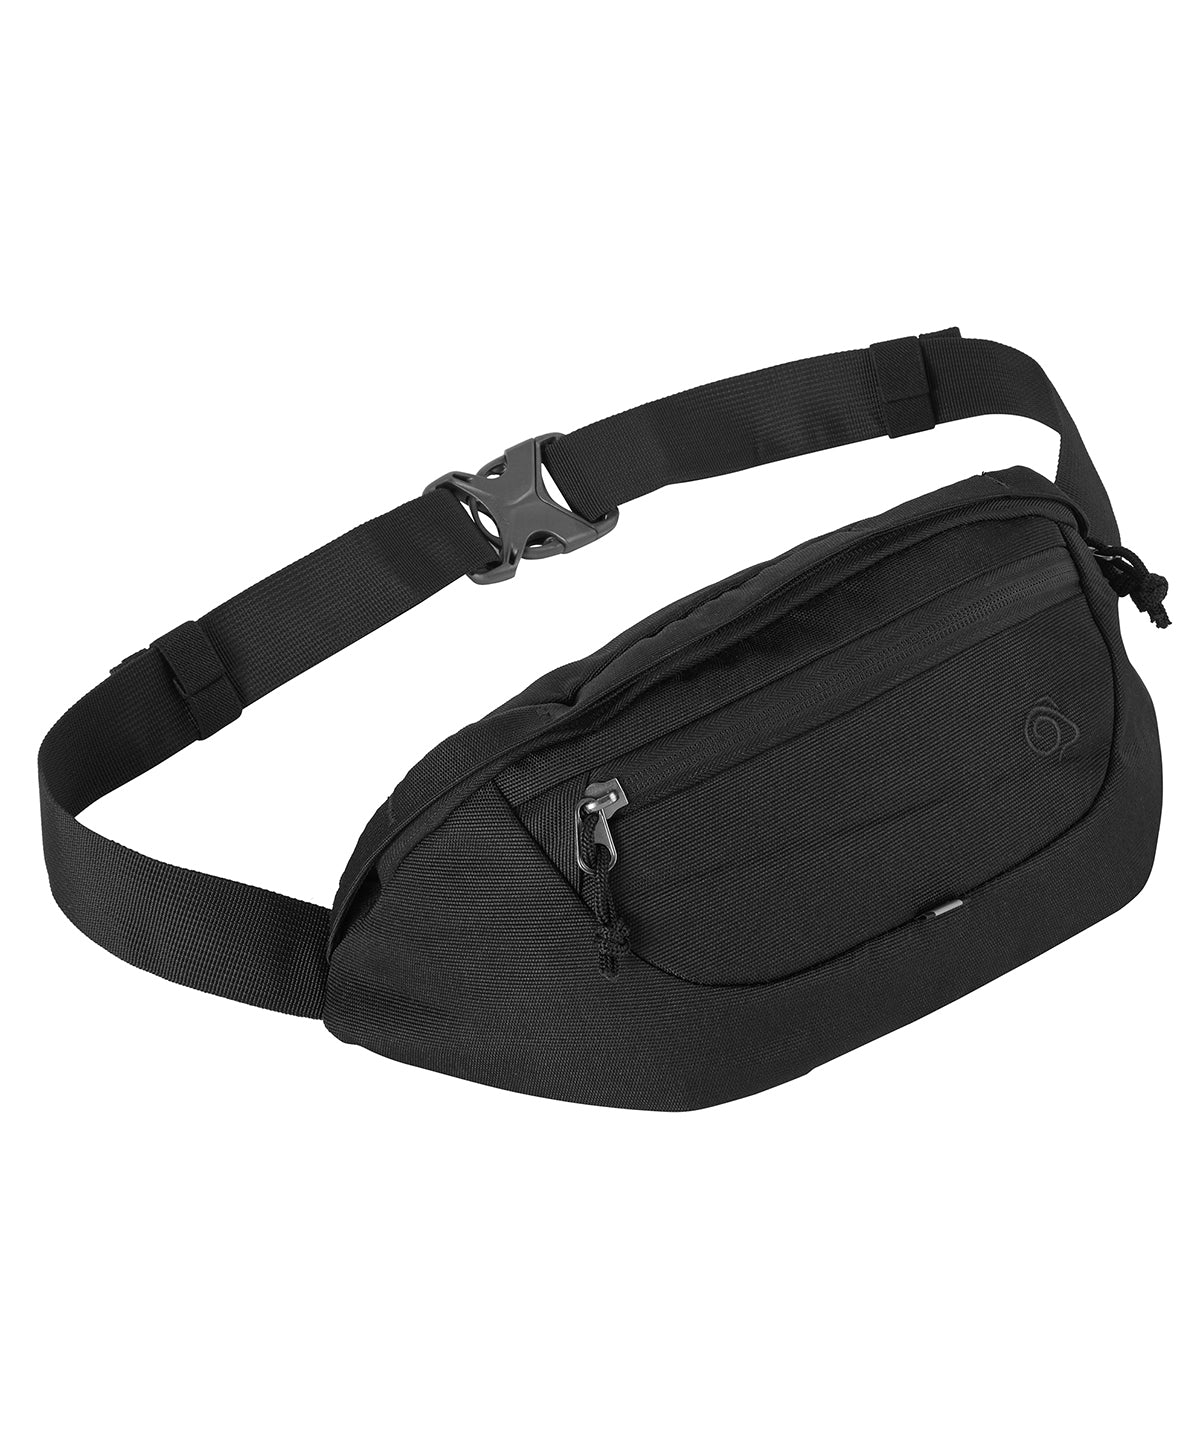 Personalised Bags - Black Craghoppers Expert Kiwi waist pack